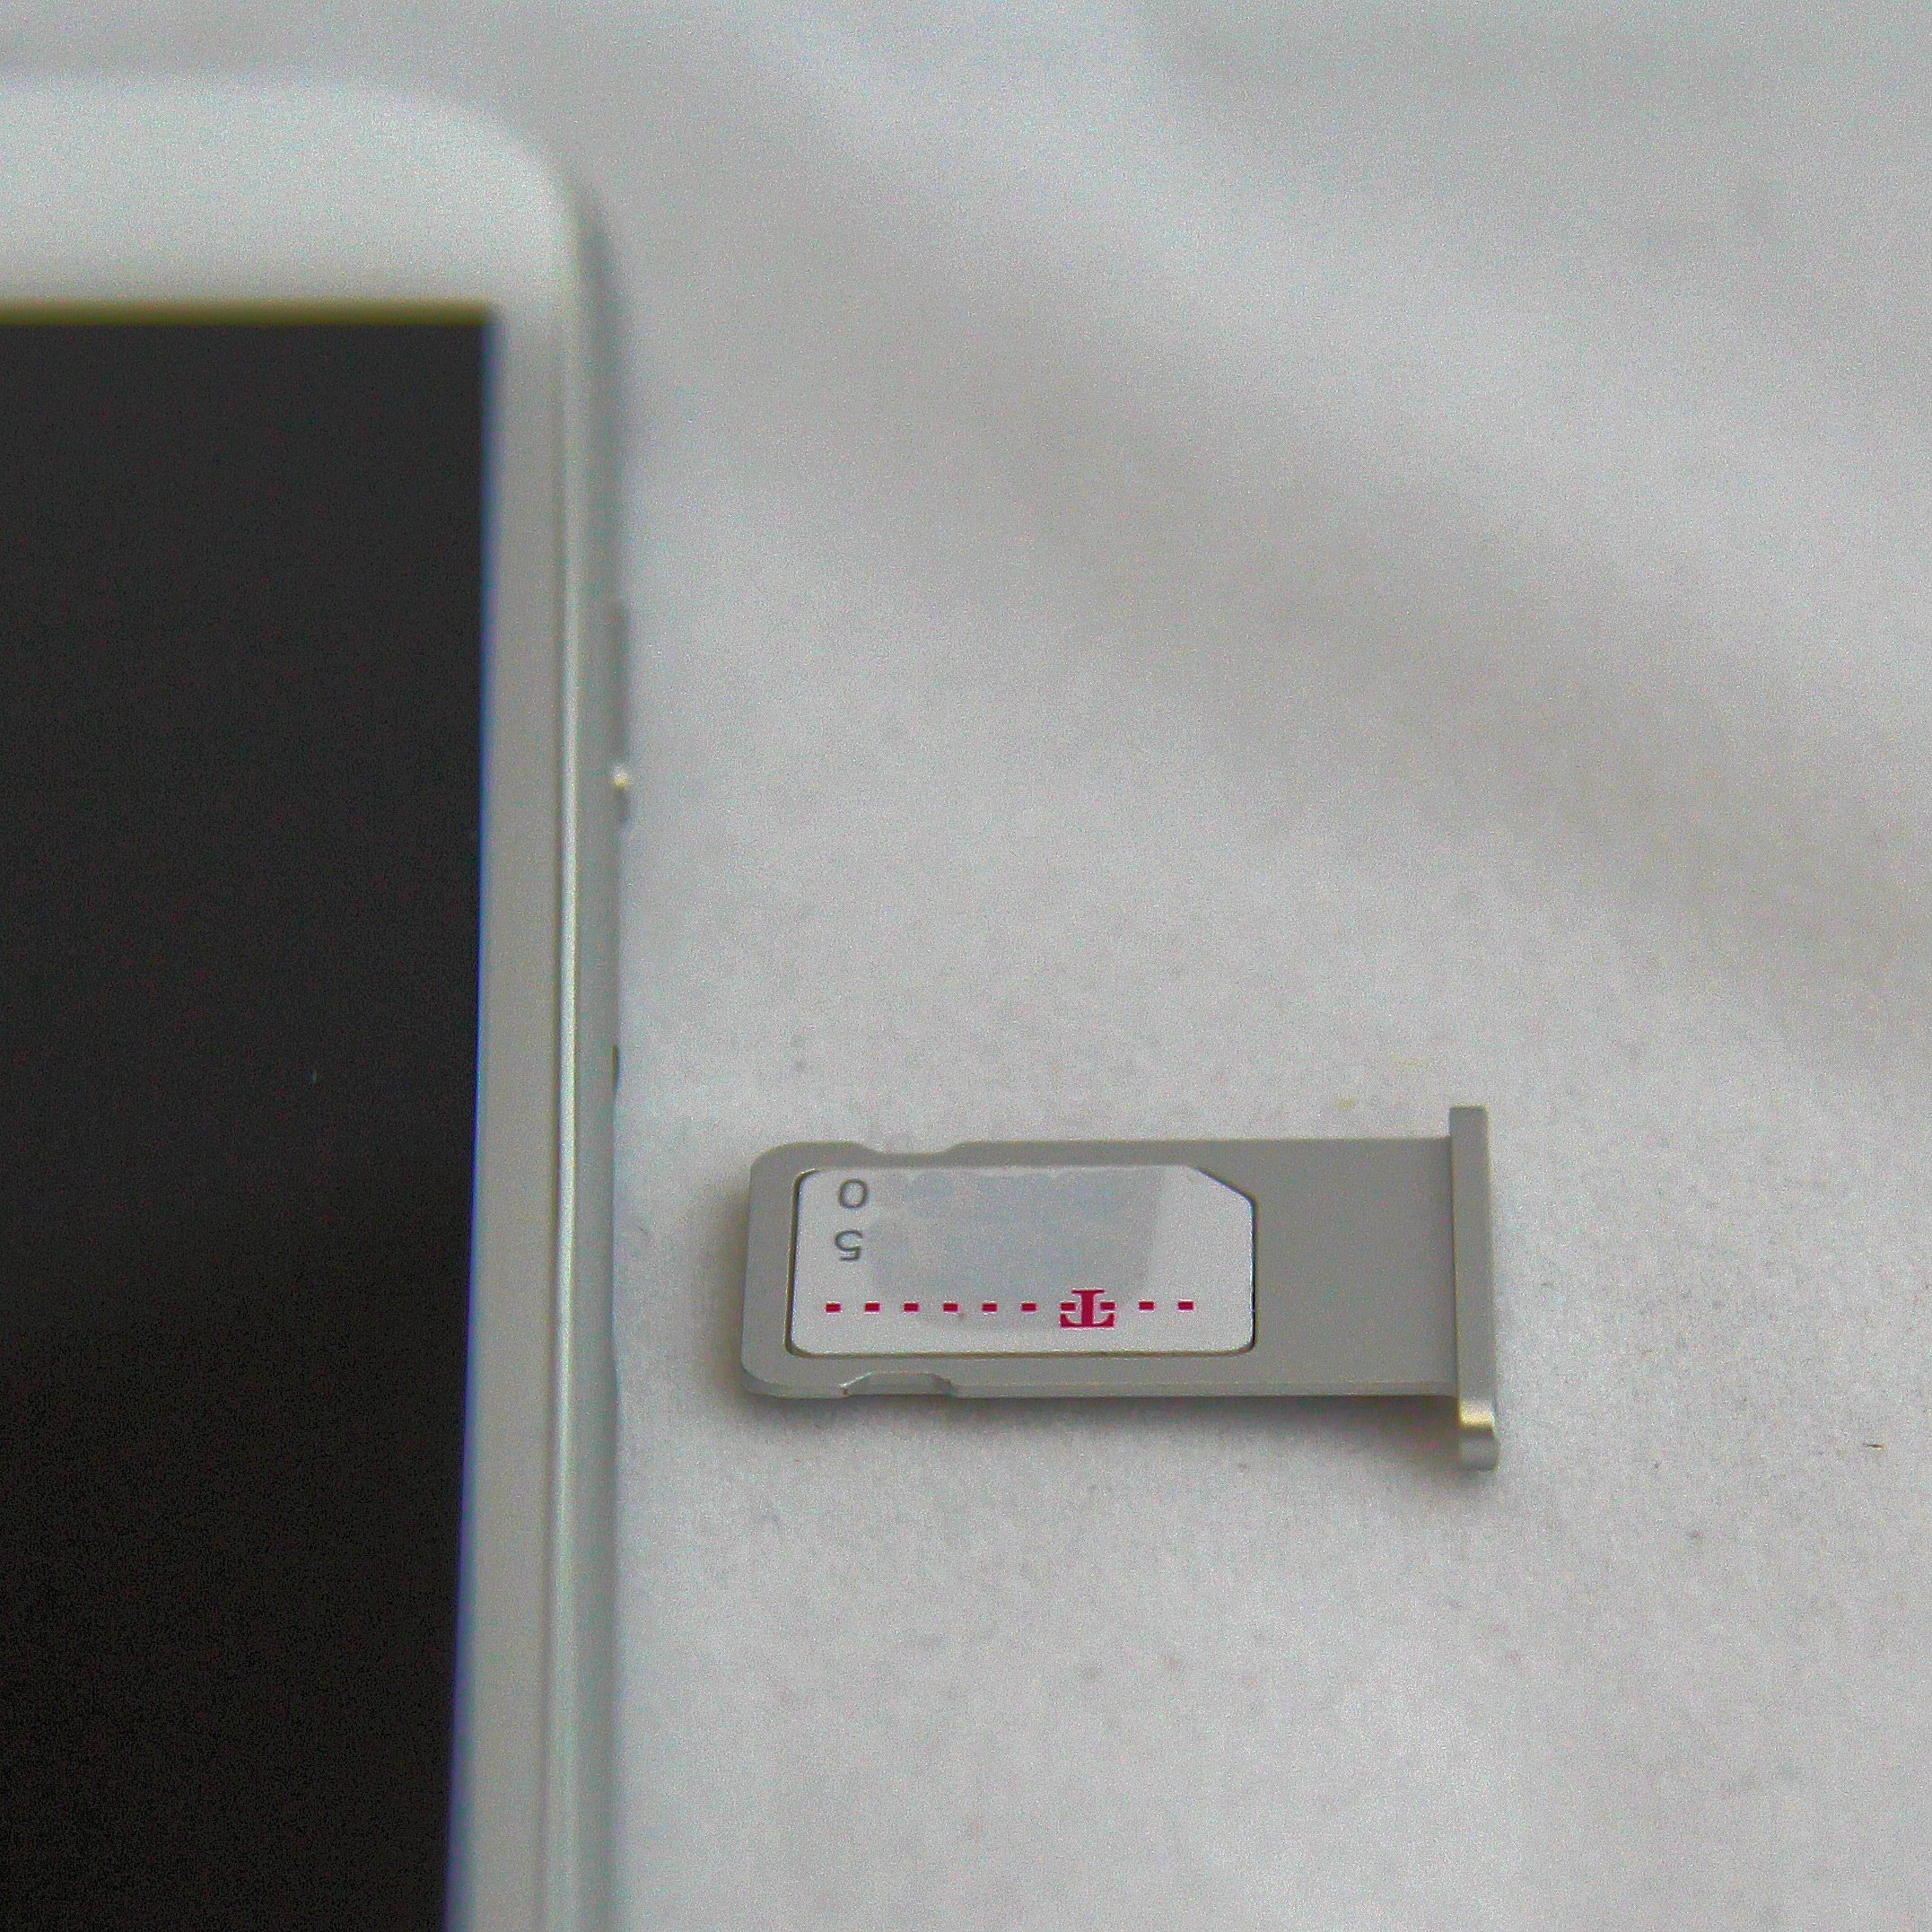 iPhone6 iPhone 6 Anleitung SIM Karte einlegen Nano Mini Micro Mobilfunk Provider 3